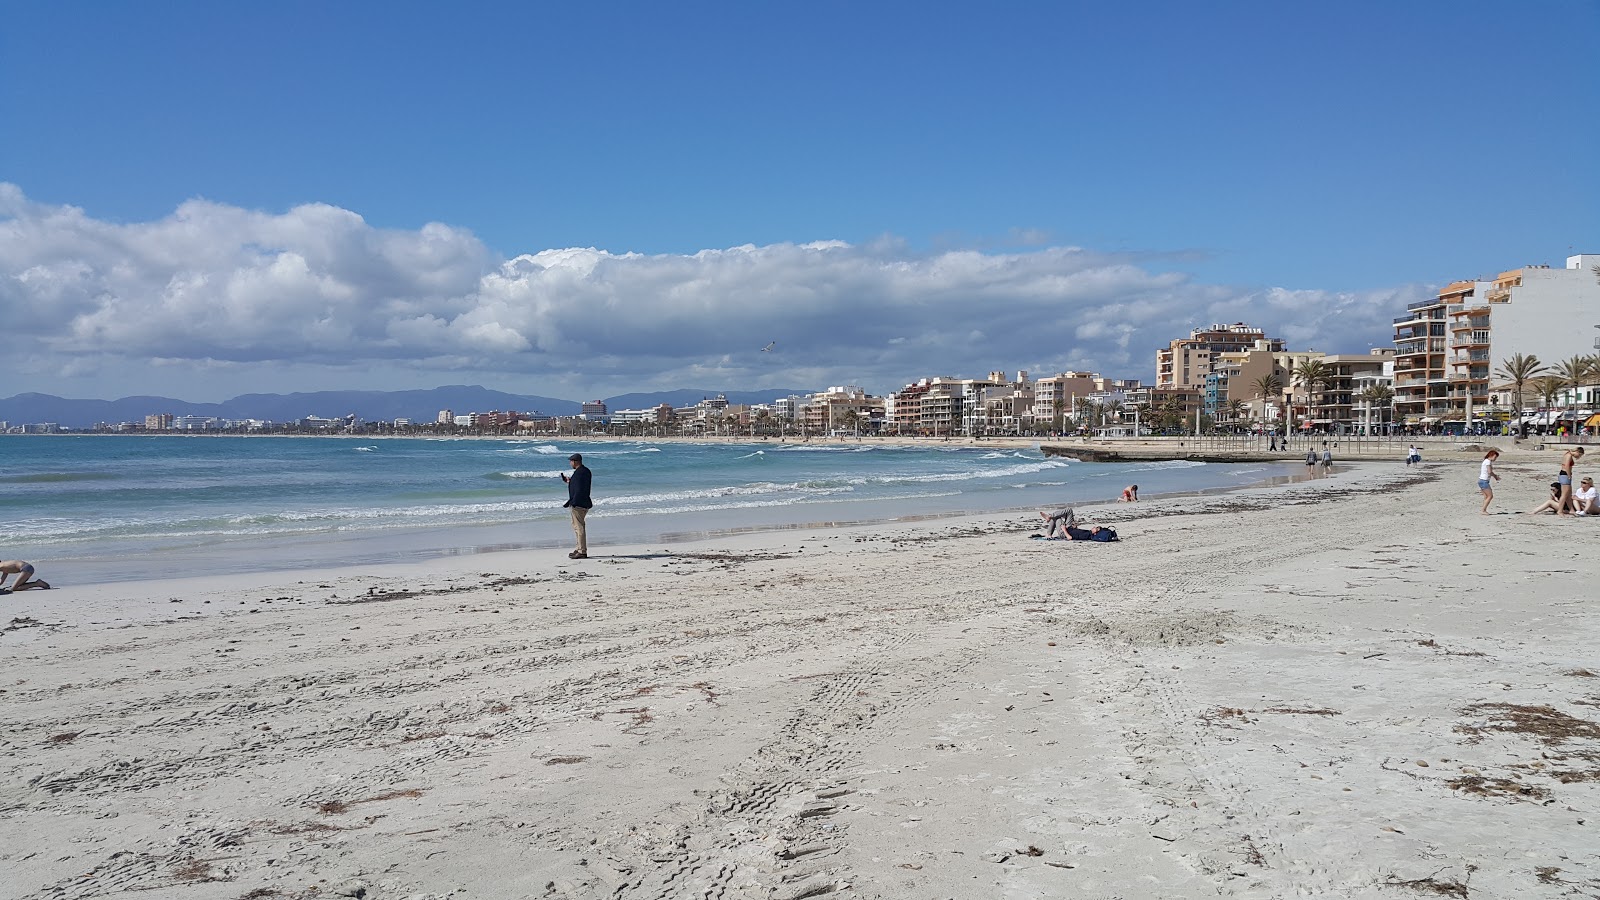 Zdjęcie Playa de Palma - popularne miejsce wśród znawców relaksu